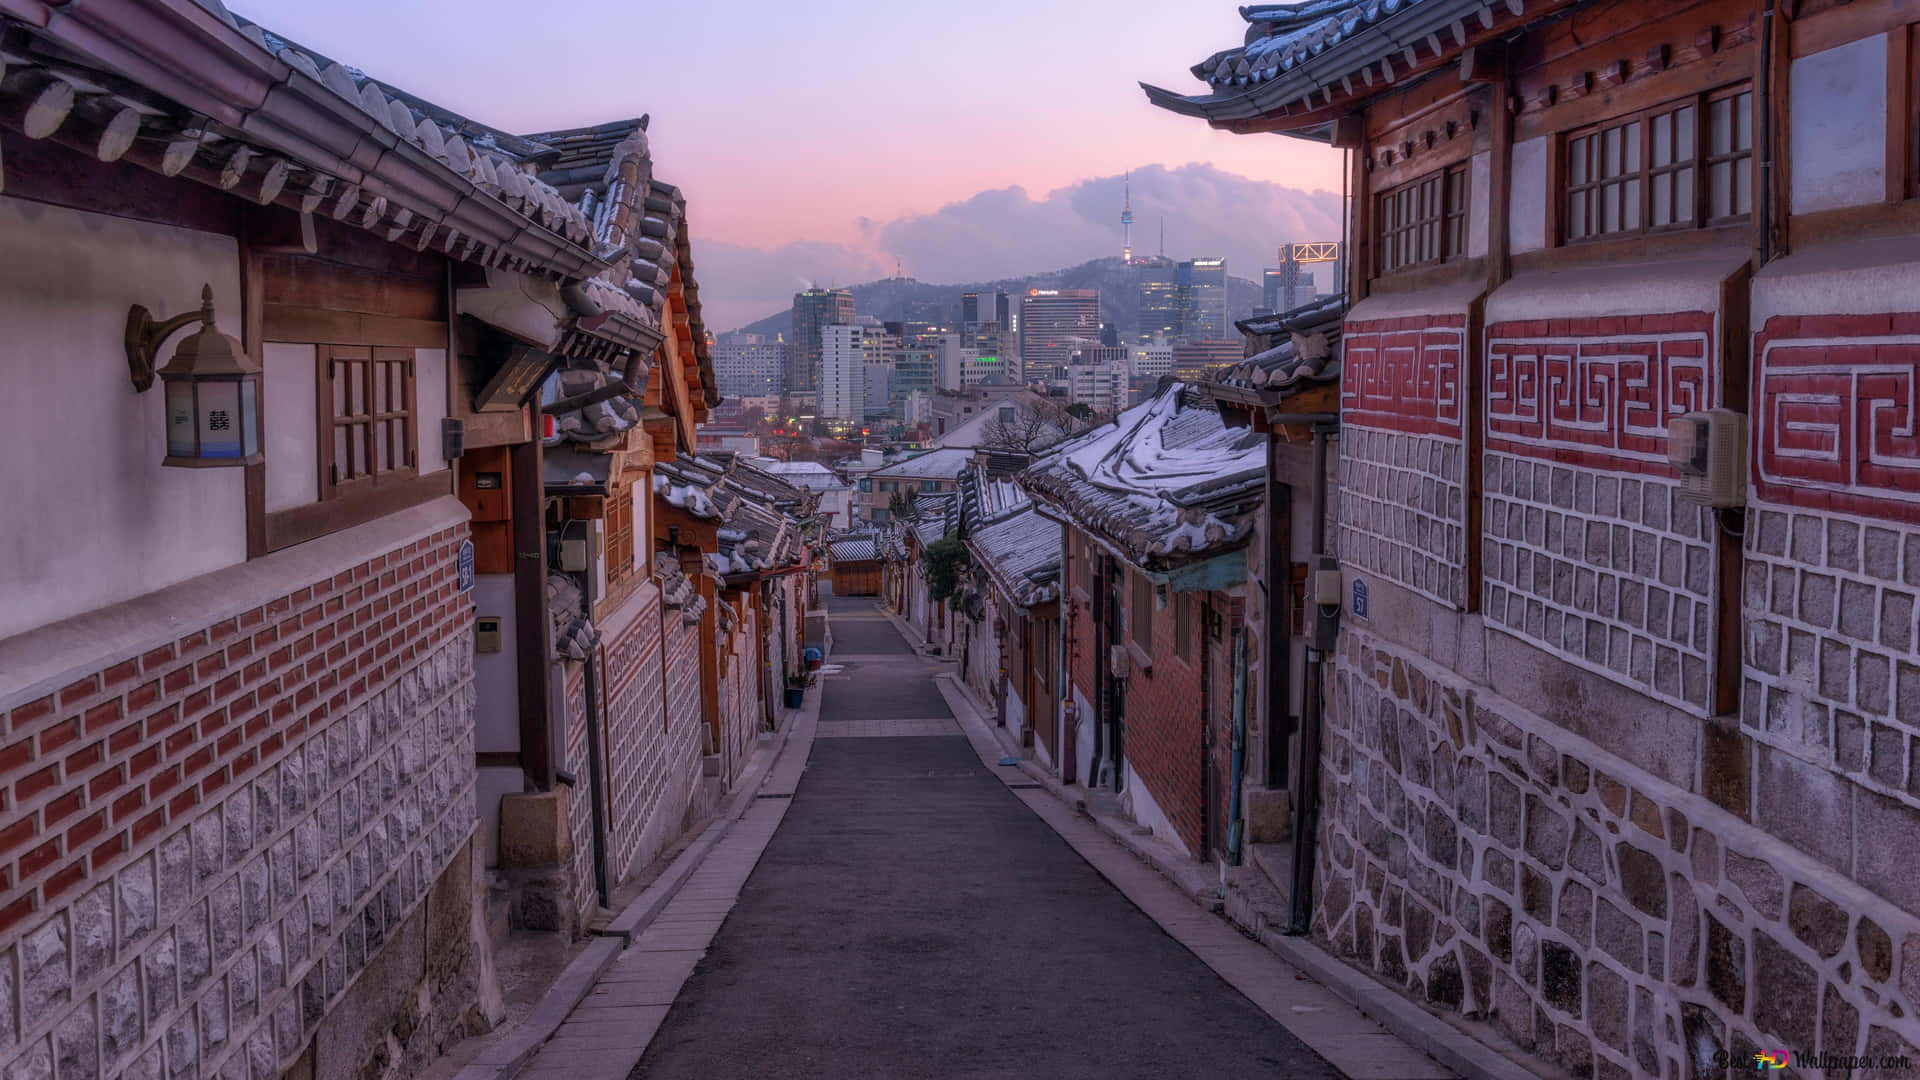 Impresionantepaisaje Urbano De Una Ciudad De Corea Del Sur